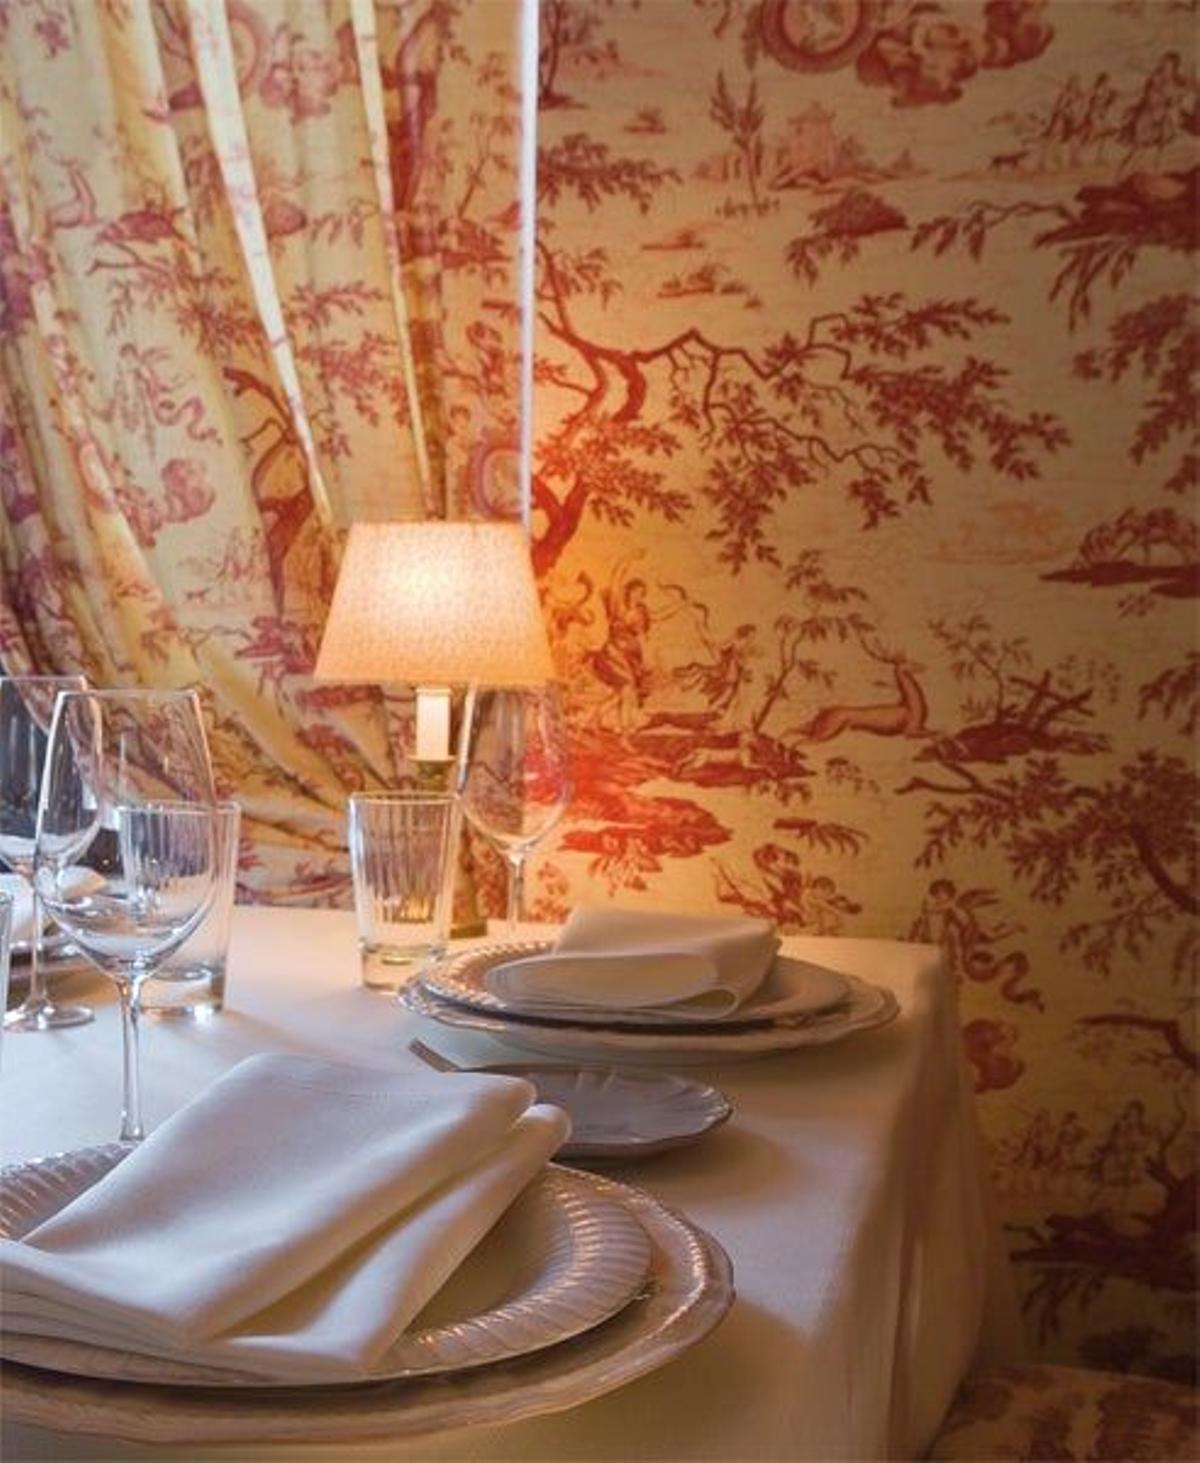 Los clientes del Cenador de Amós, en una preciosa casa palacio del siglo XVIII, pueden elaborar su